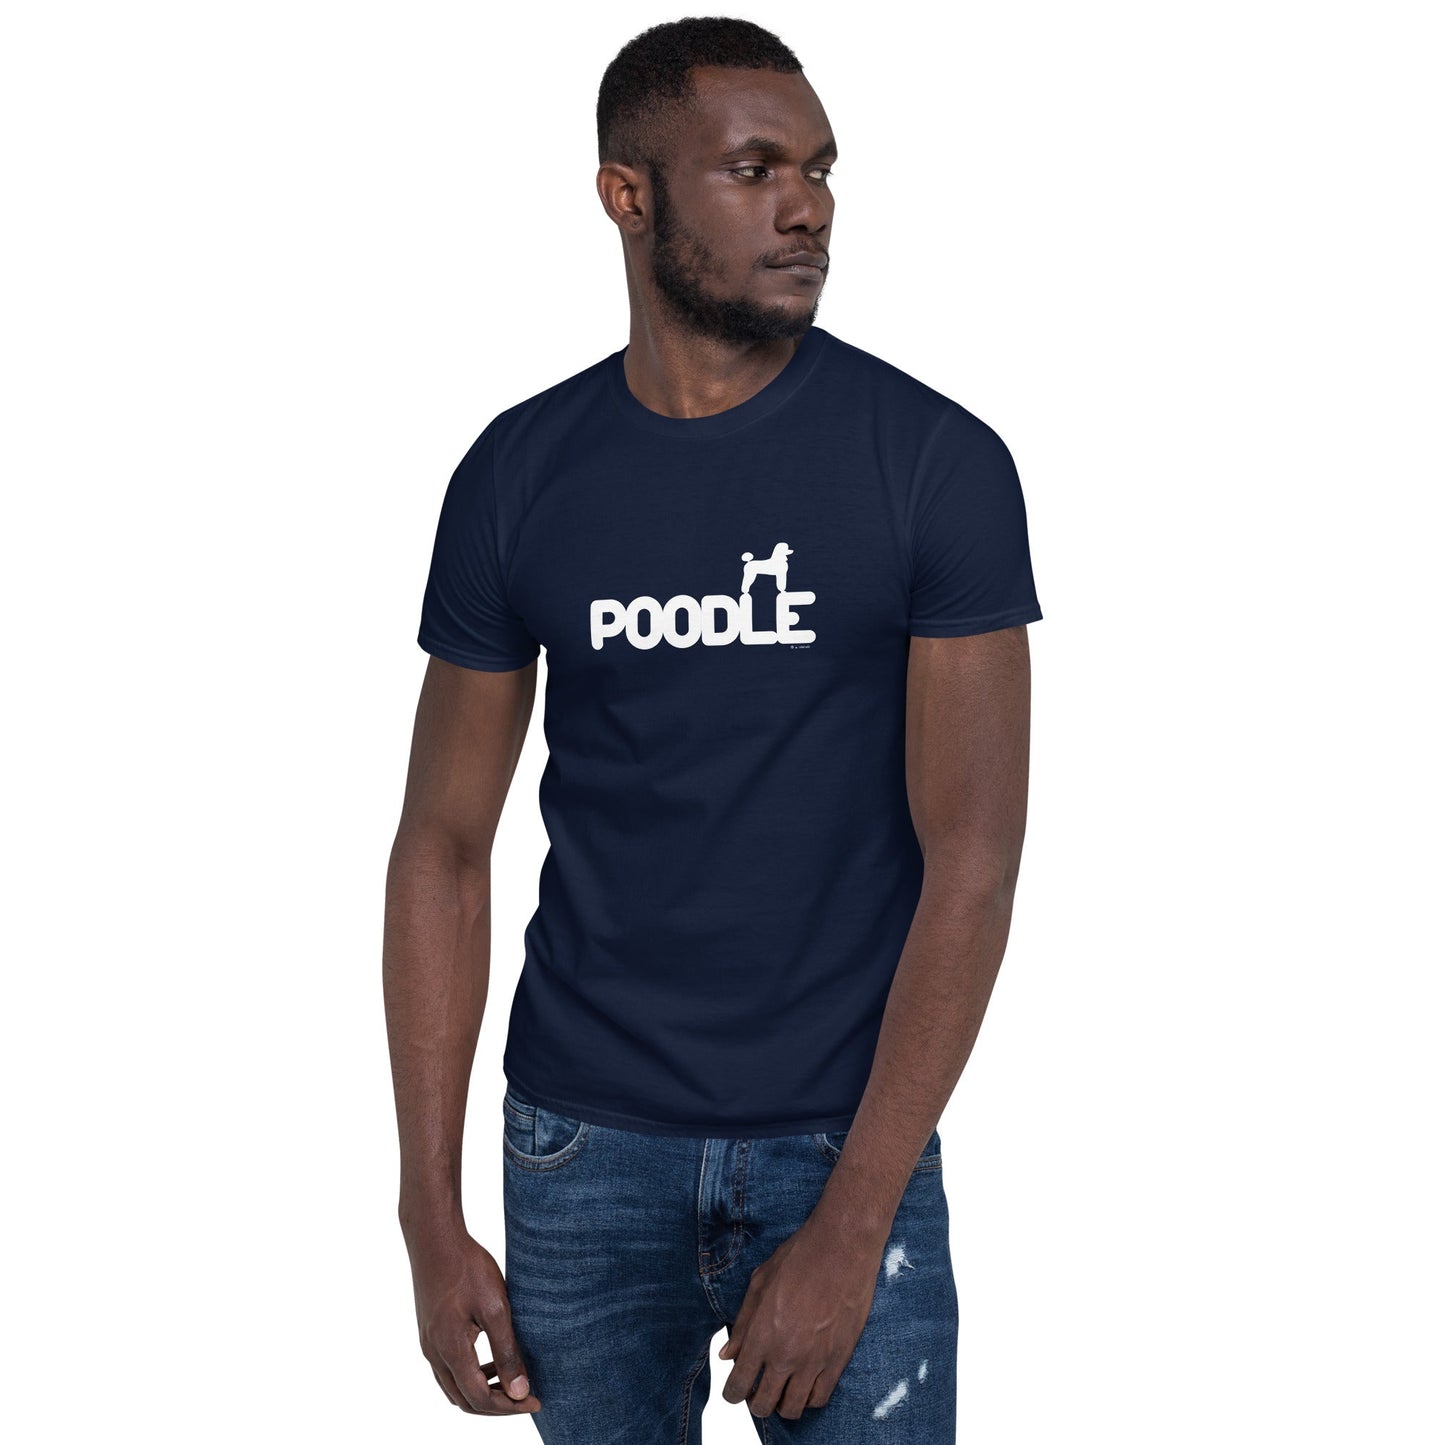 Camiseta unissex com mangas curtas - Poodle i-animals